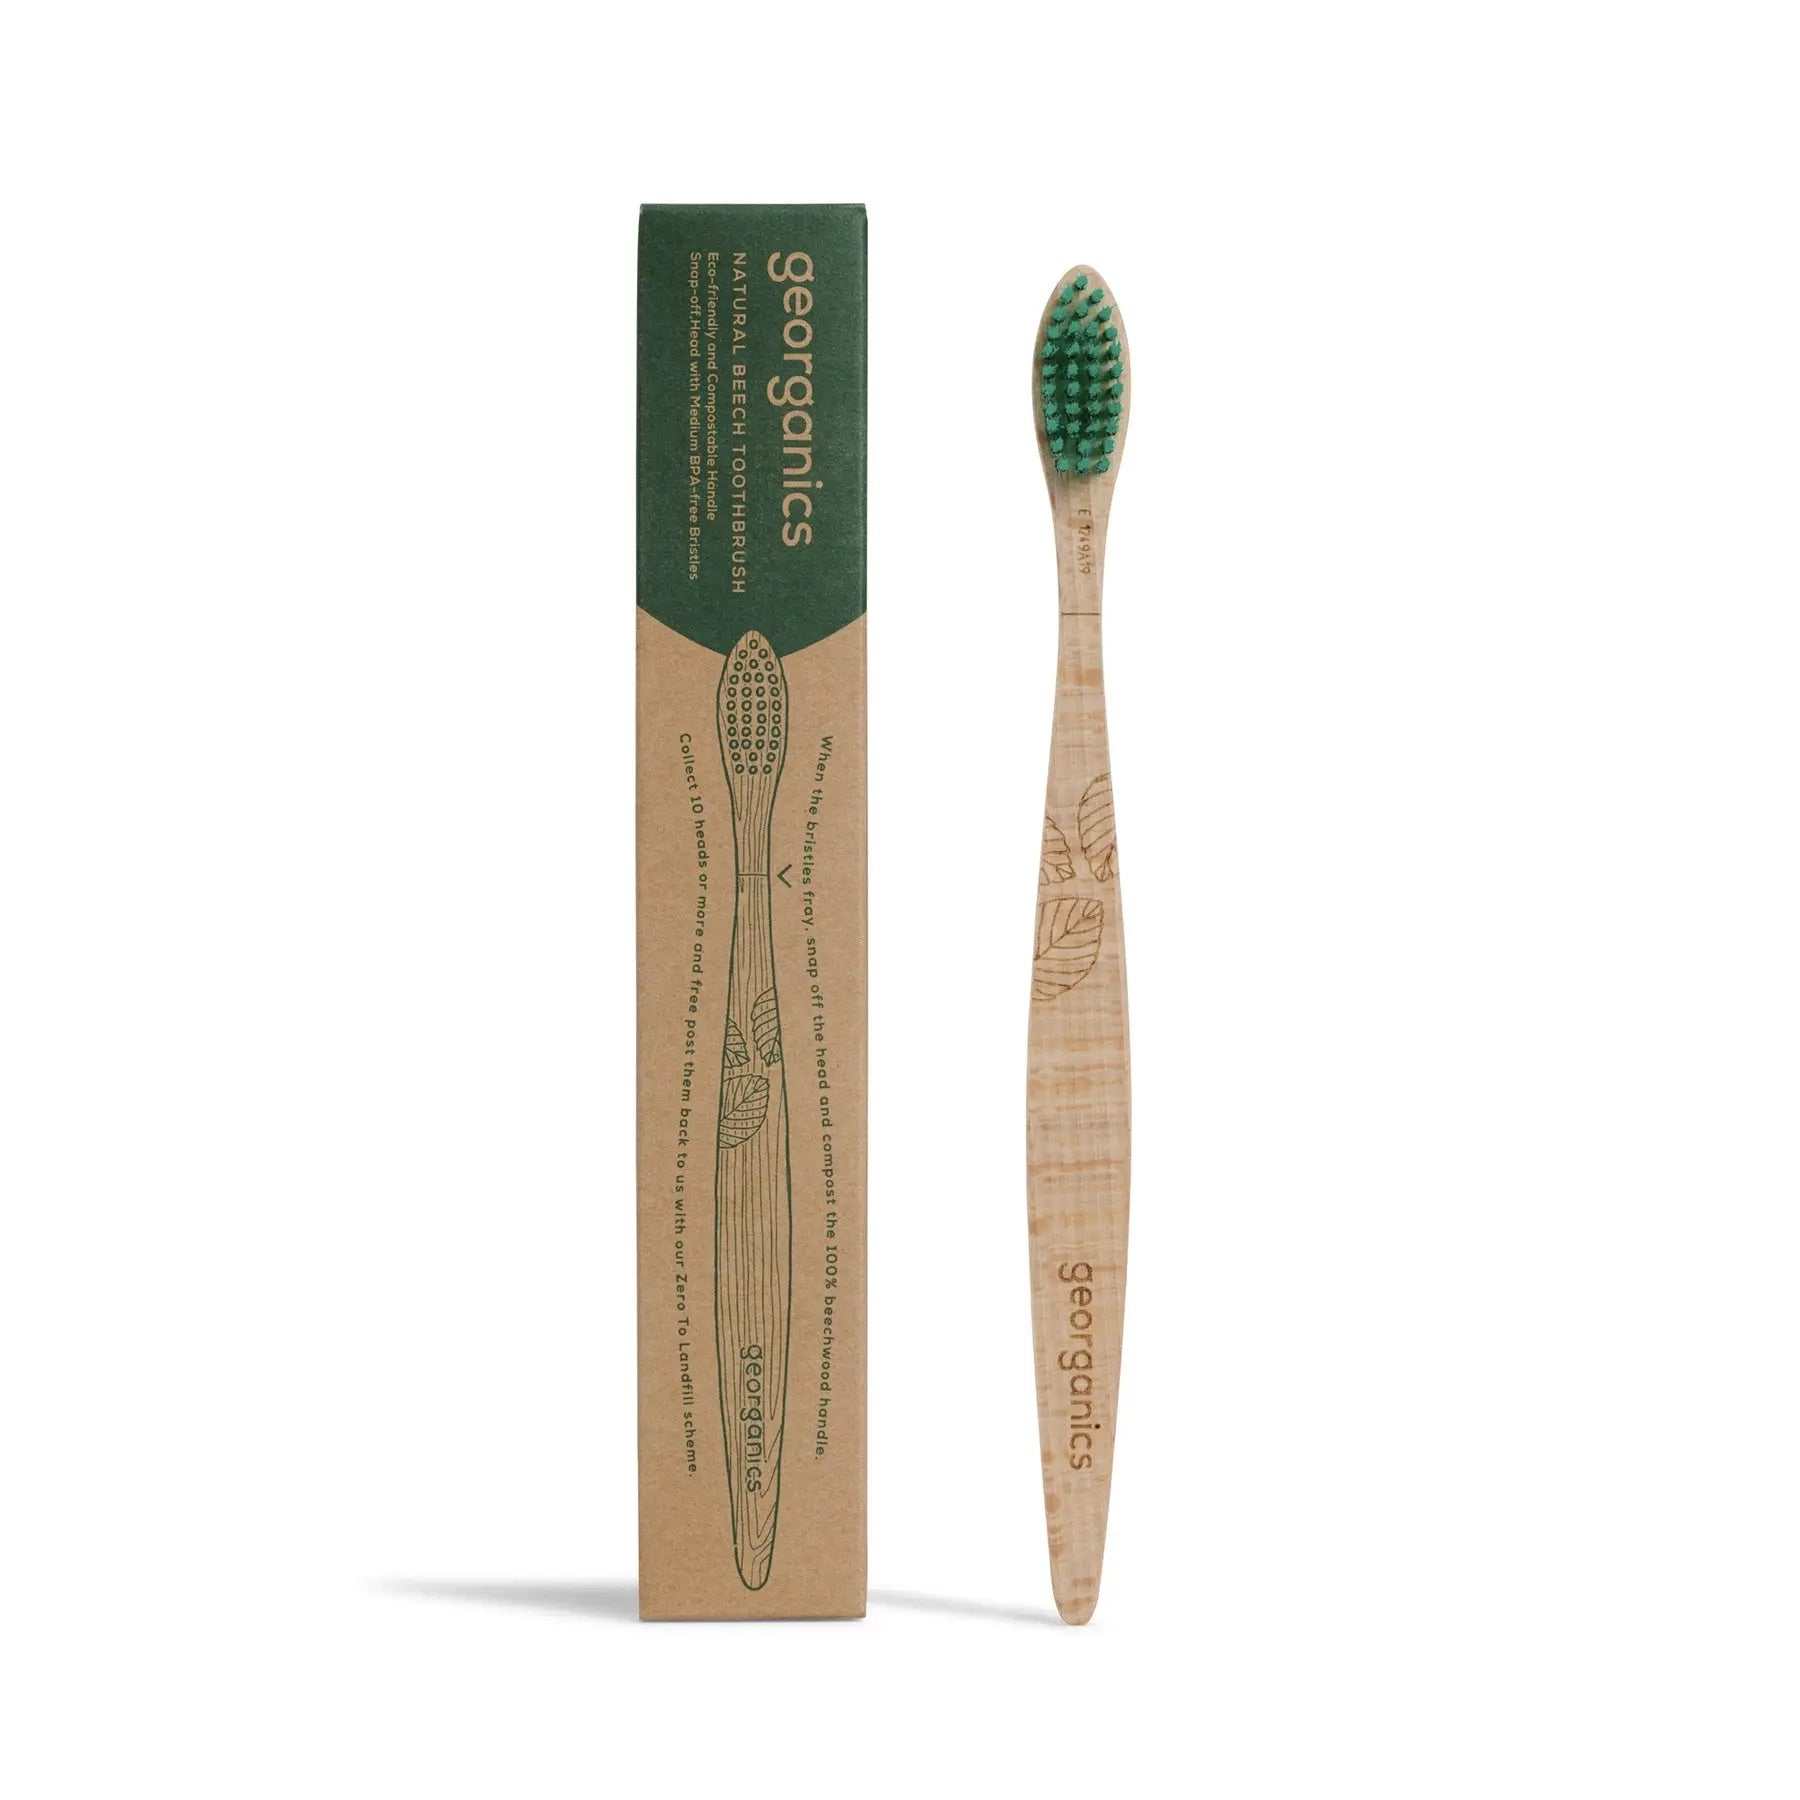 Medium adult beech wood toothbrush